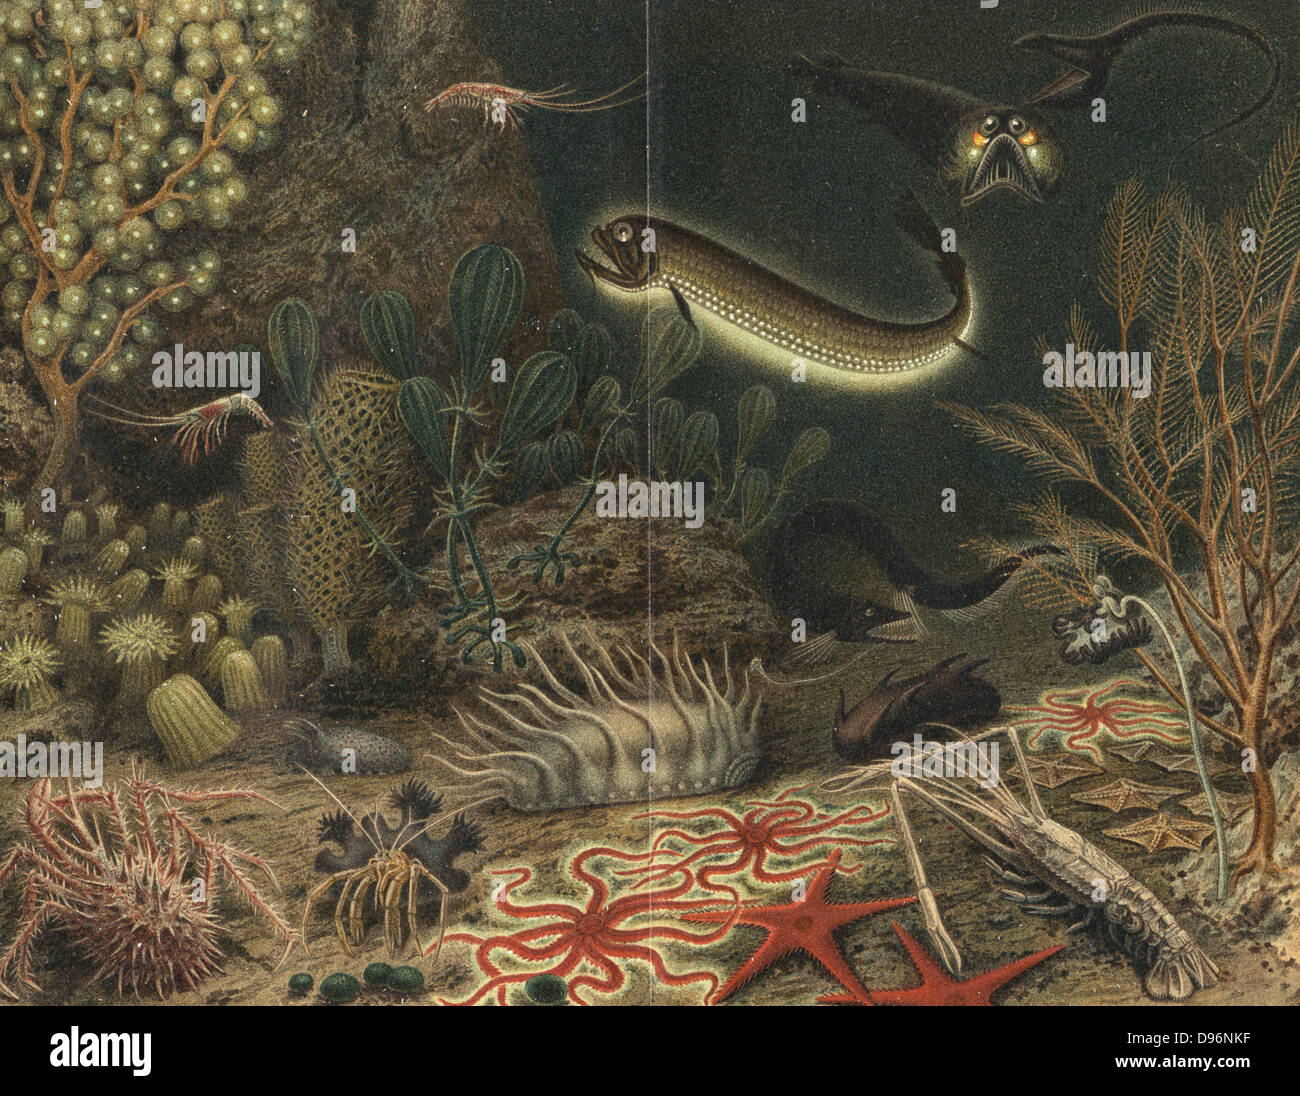 Vue d'artiste de scène en haute mer avec des poissons lumineux. Certaines des créatures présentés ici ont été élevés dans les dragues pendant les expéditions océanographiques du 'travailleur' c1880, y compris l'Eurypharynx pelecanoides (en haut à droite). Henri Milne-Edwards (1800-1885). À partir de 'ie', Naturkrafte M Wilhelm Meyer (Leipzig, 1903). Chromolithographie. Banque D'Images